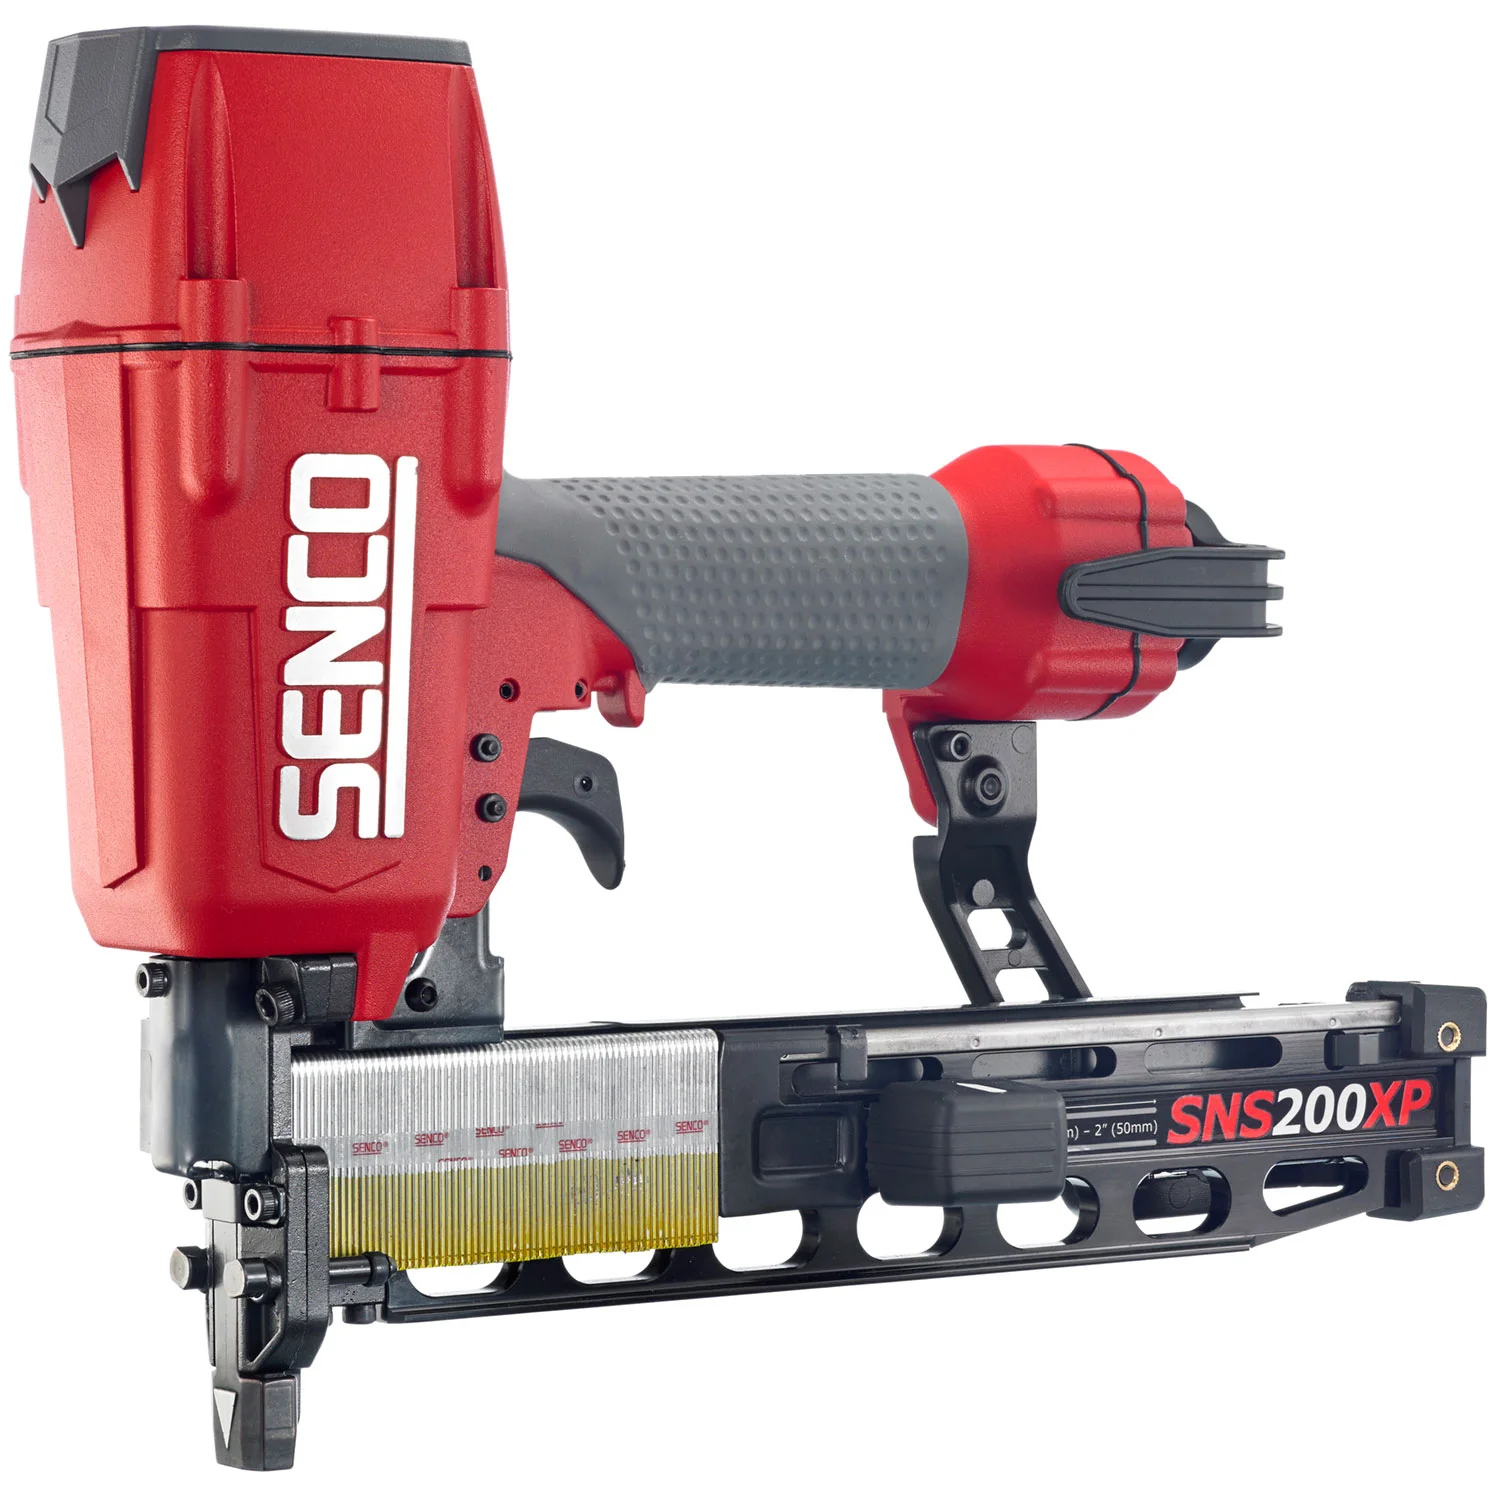 Senco offers new construction stapler